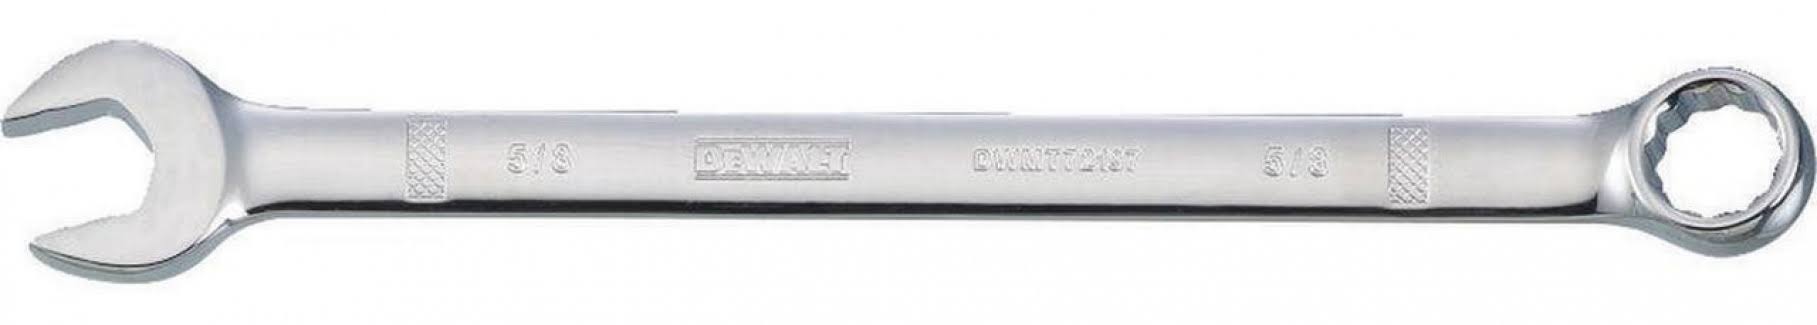 Dewalt DWMT72197OSP Combination Wrench - 5/8"